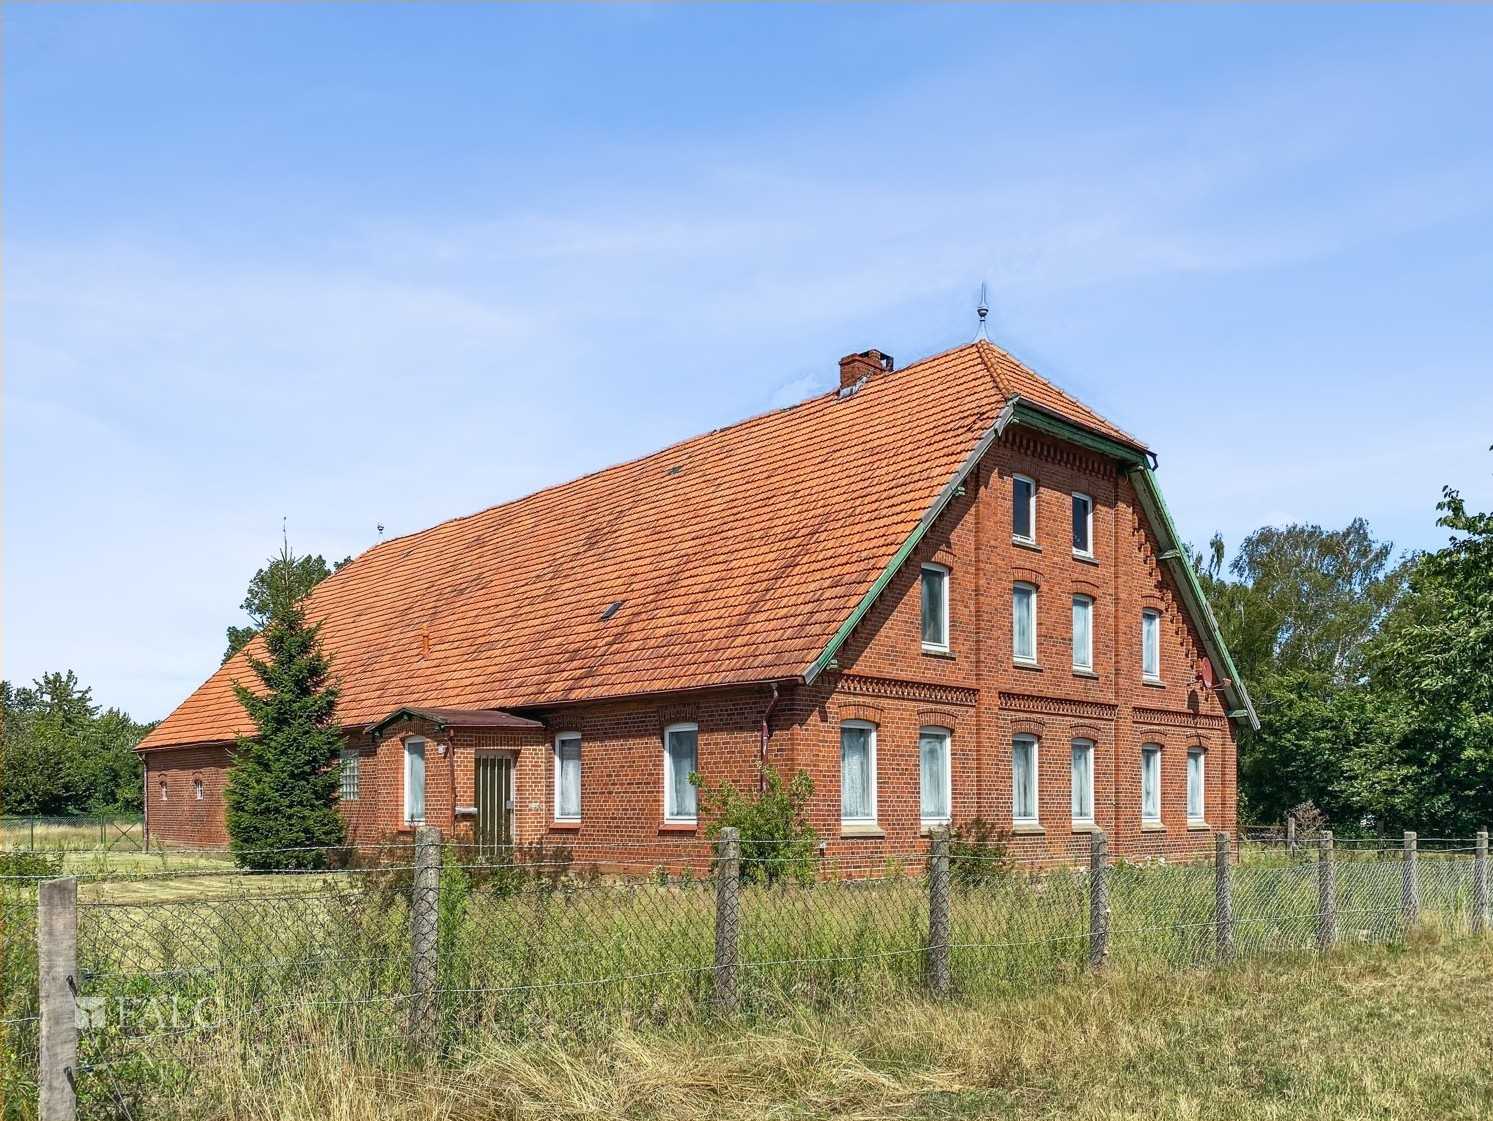 Fotos Bauernhaus in Schleswig-Holstein